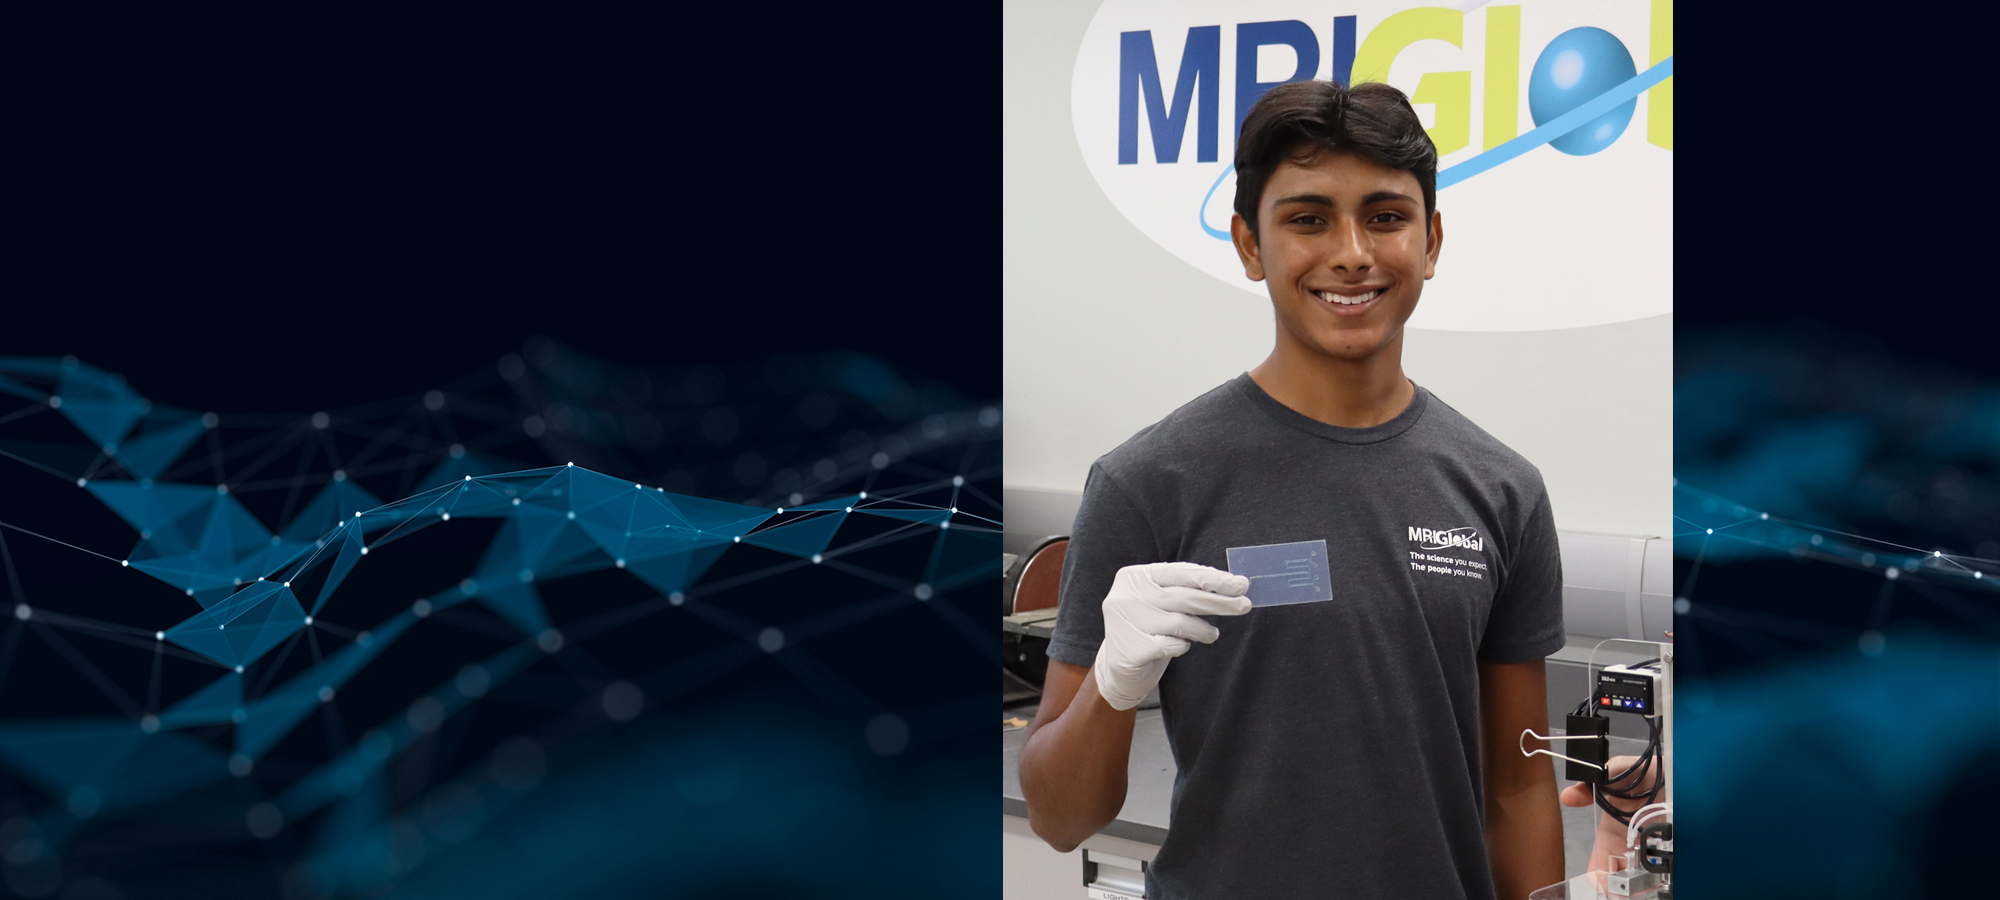 Arjun Garapaty Holding Microfluidic Device in Engineering Lab MRIGlobal